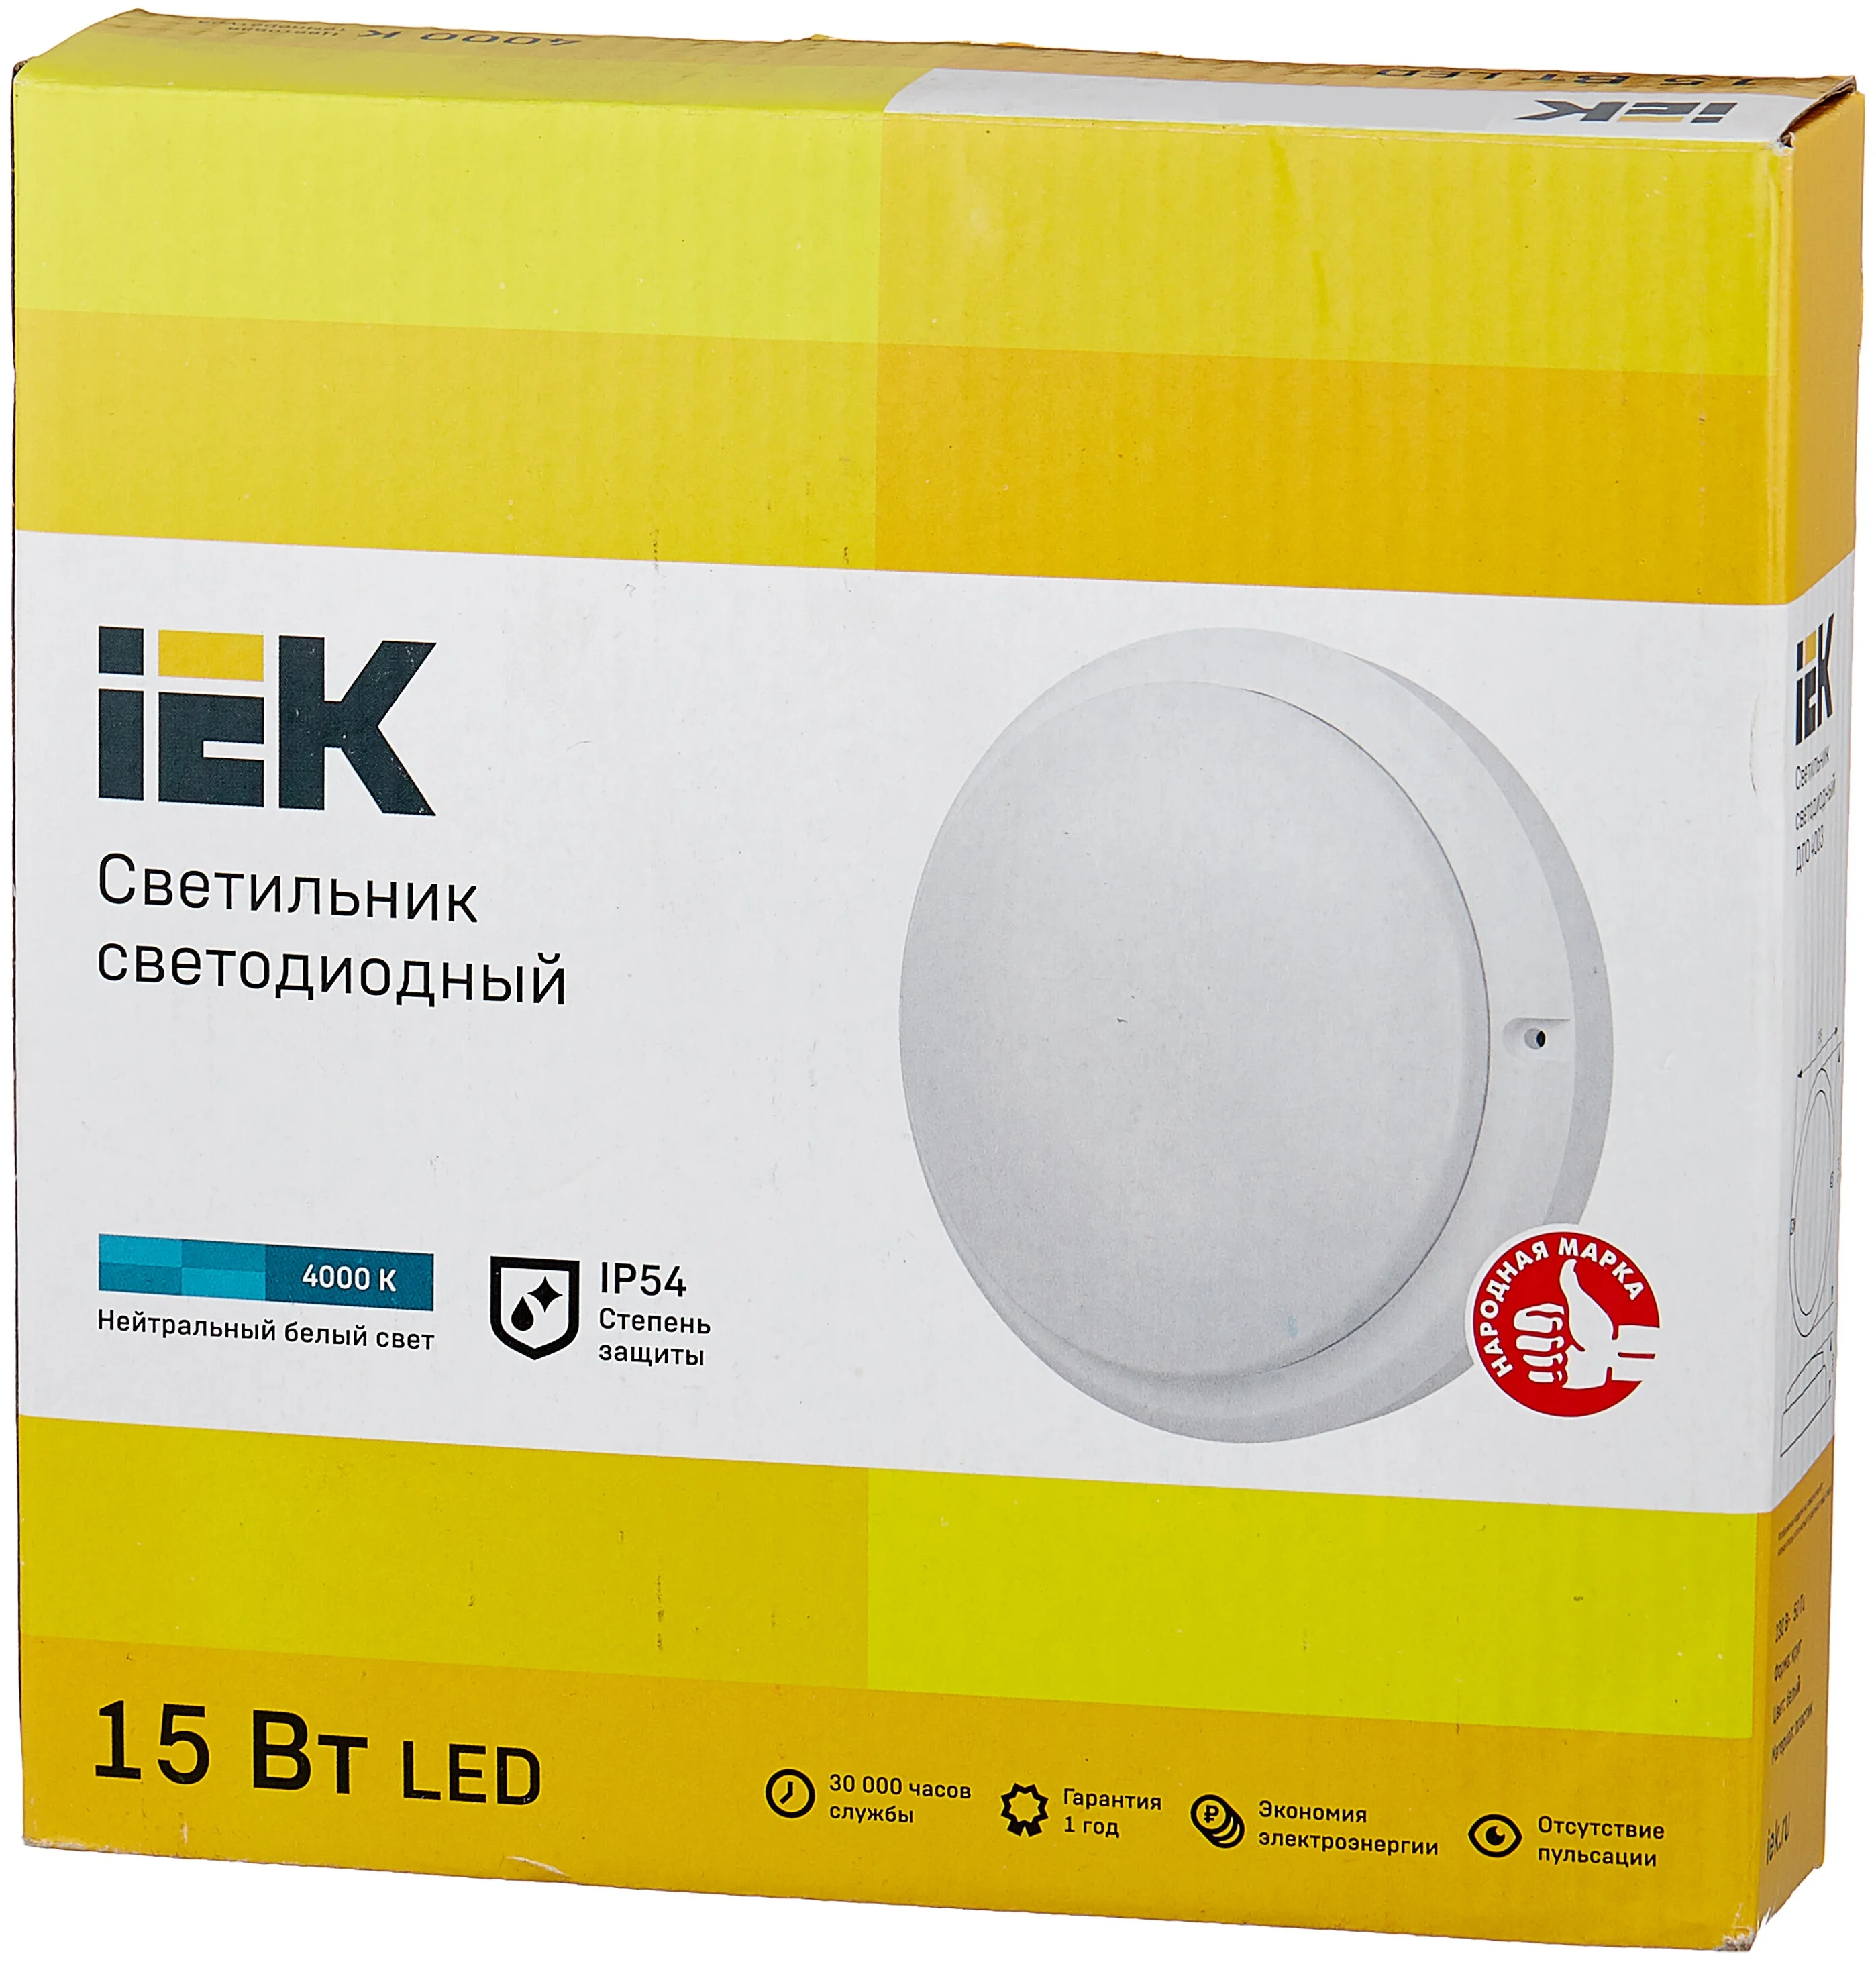 IEK 4003 (15Вт 4000K) - материал плафона/абажура: пластик